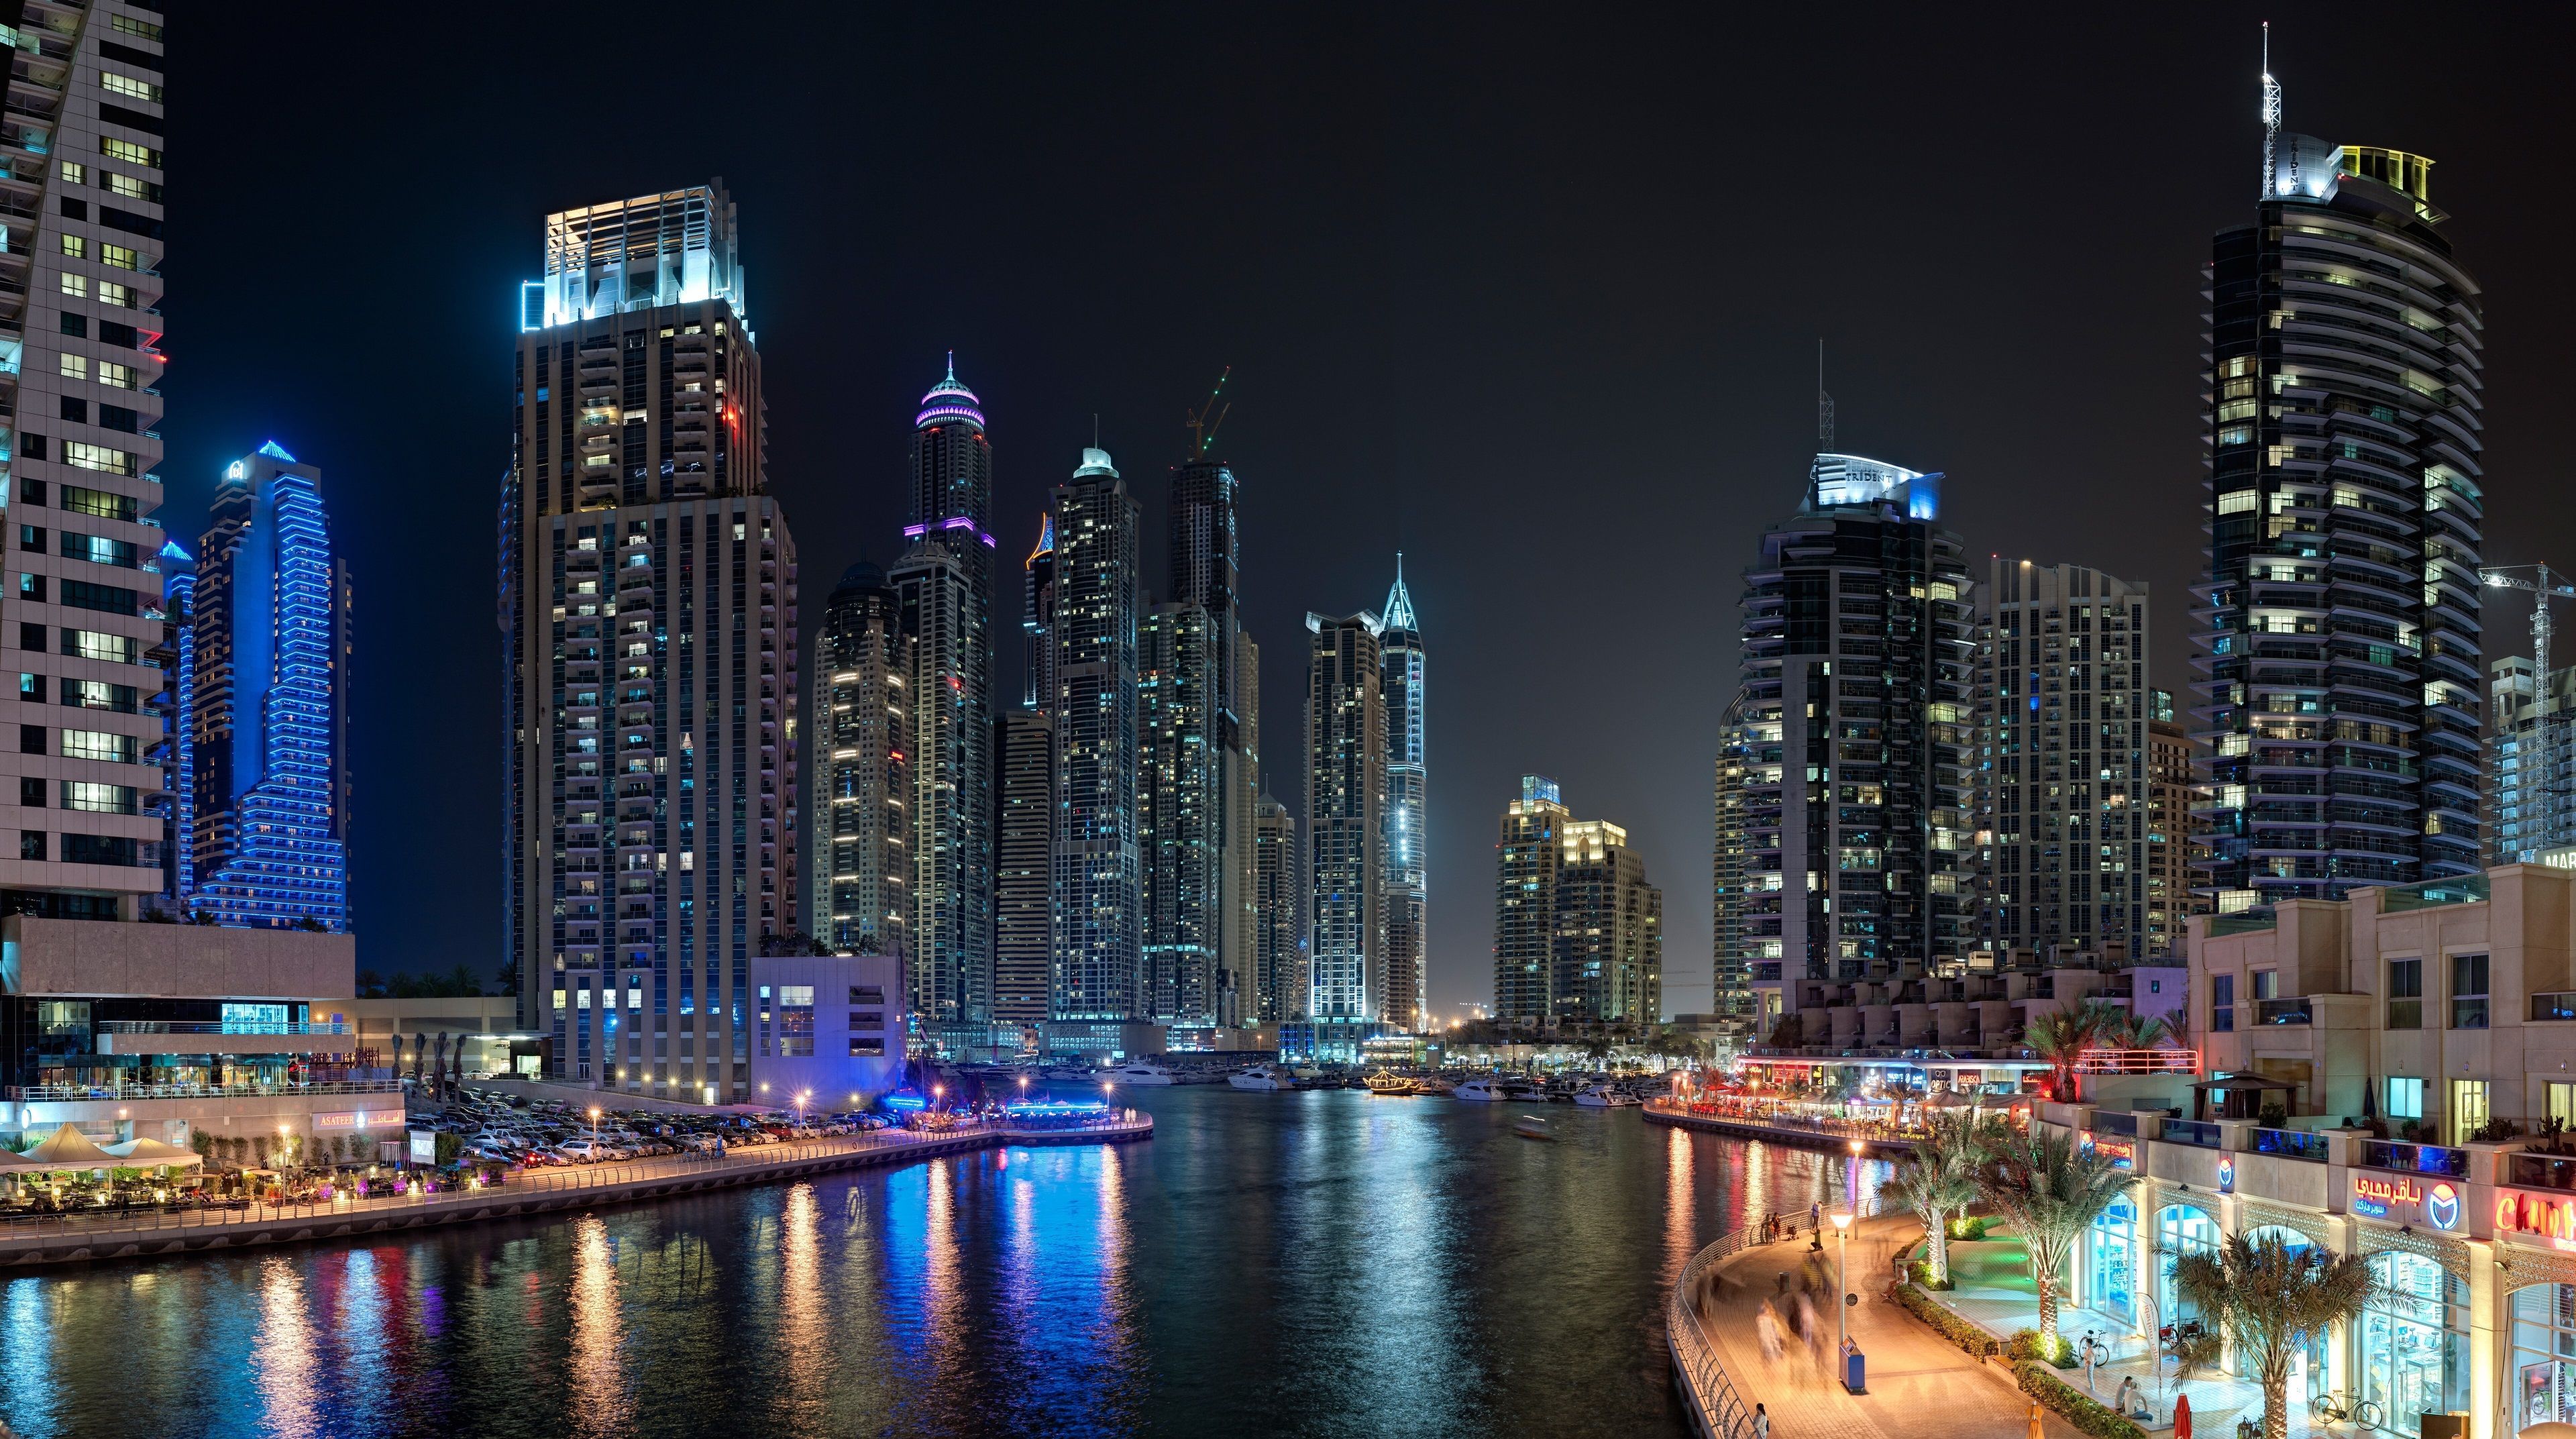 استوری حیرت انگیز شهر دبی و جاهای دیدنی آن در شب